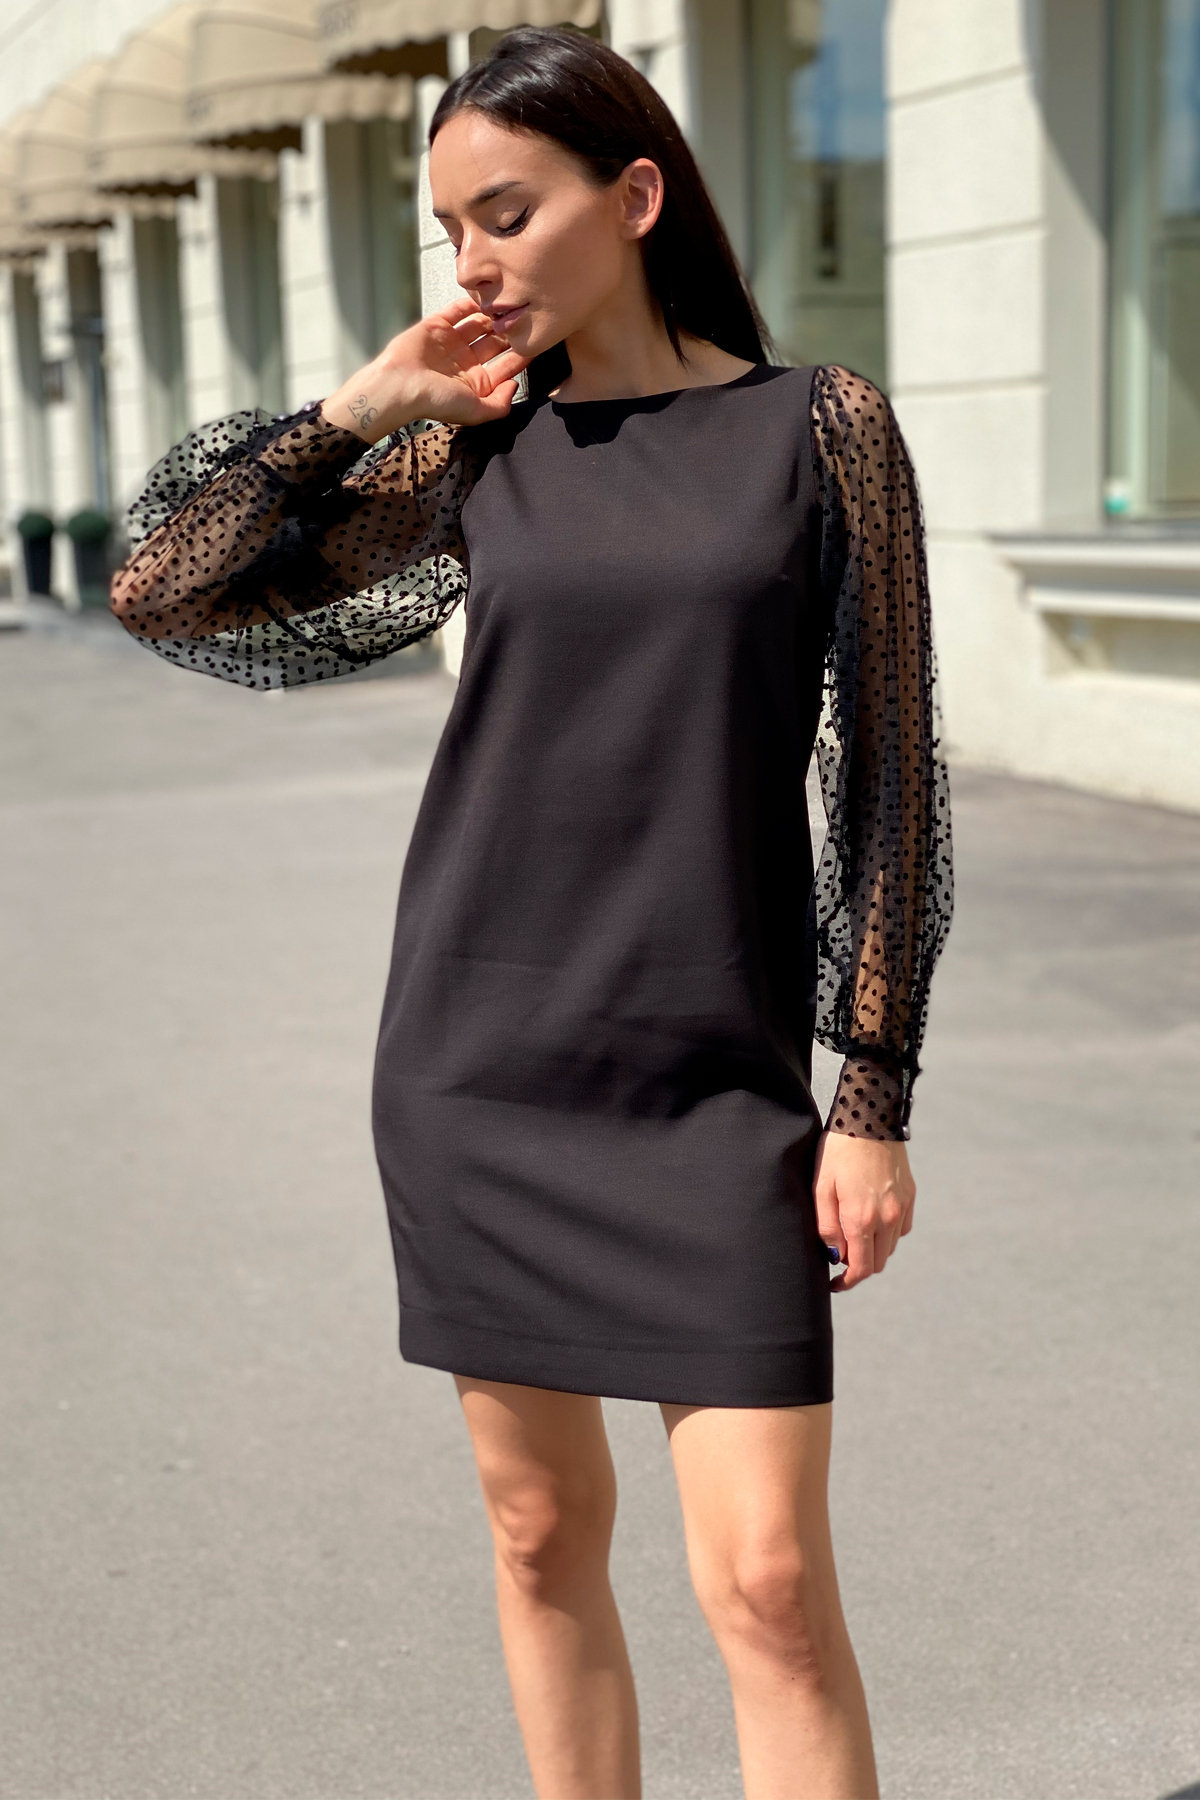 Платье Висконти 8978 АРТ. 45288 Цвет: Черный - фото 3, интернет магазин tm-modus.ru